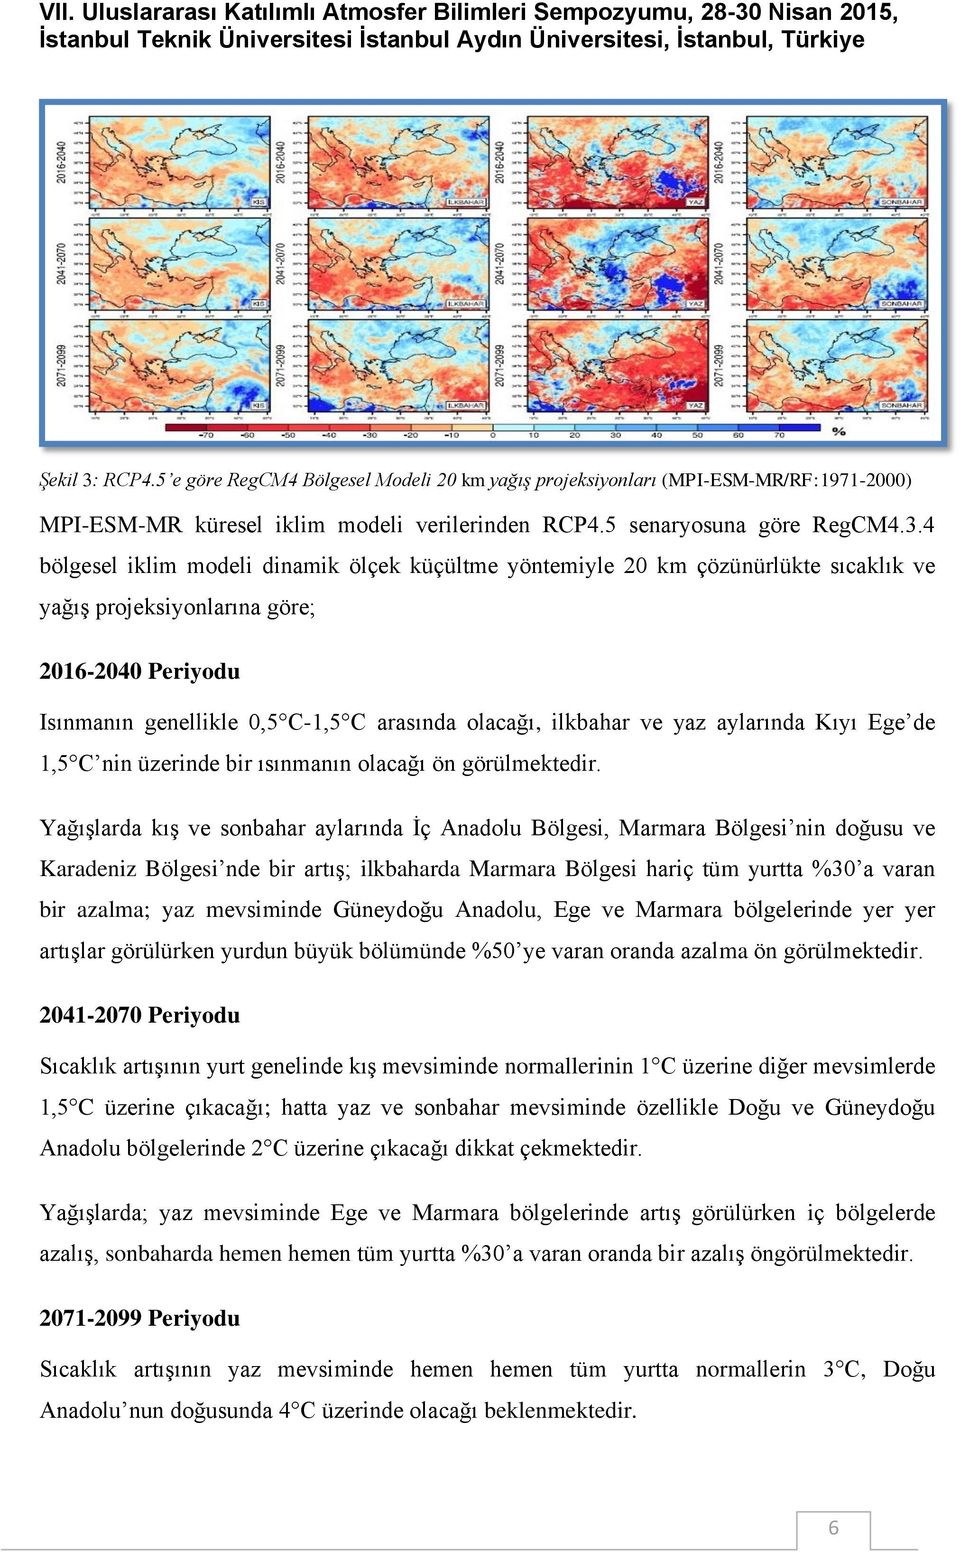 4 bölgesel iklim modeli dinamik ölçek küçültme yöntemiyle 20 km çözünürlükte sıcaklık ve yağış projeksiyonlarına göre; 2016-2040 Periyodu Isınmanın genellikle 0,5 C-1,5 C arasında olacağı, ilkbahar